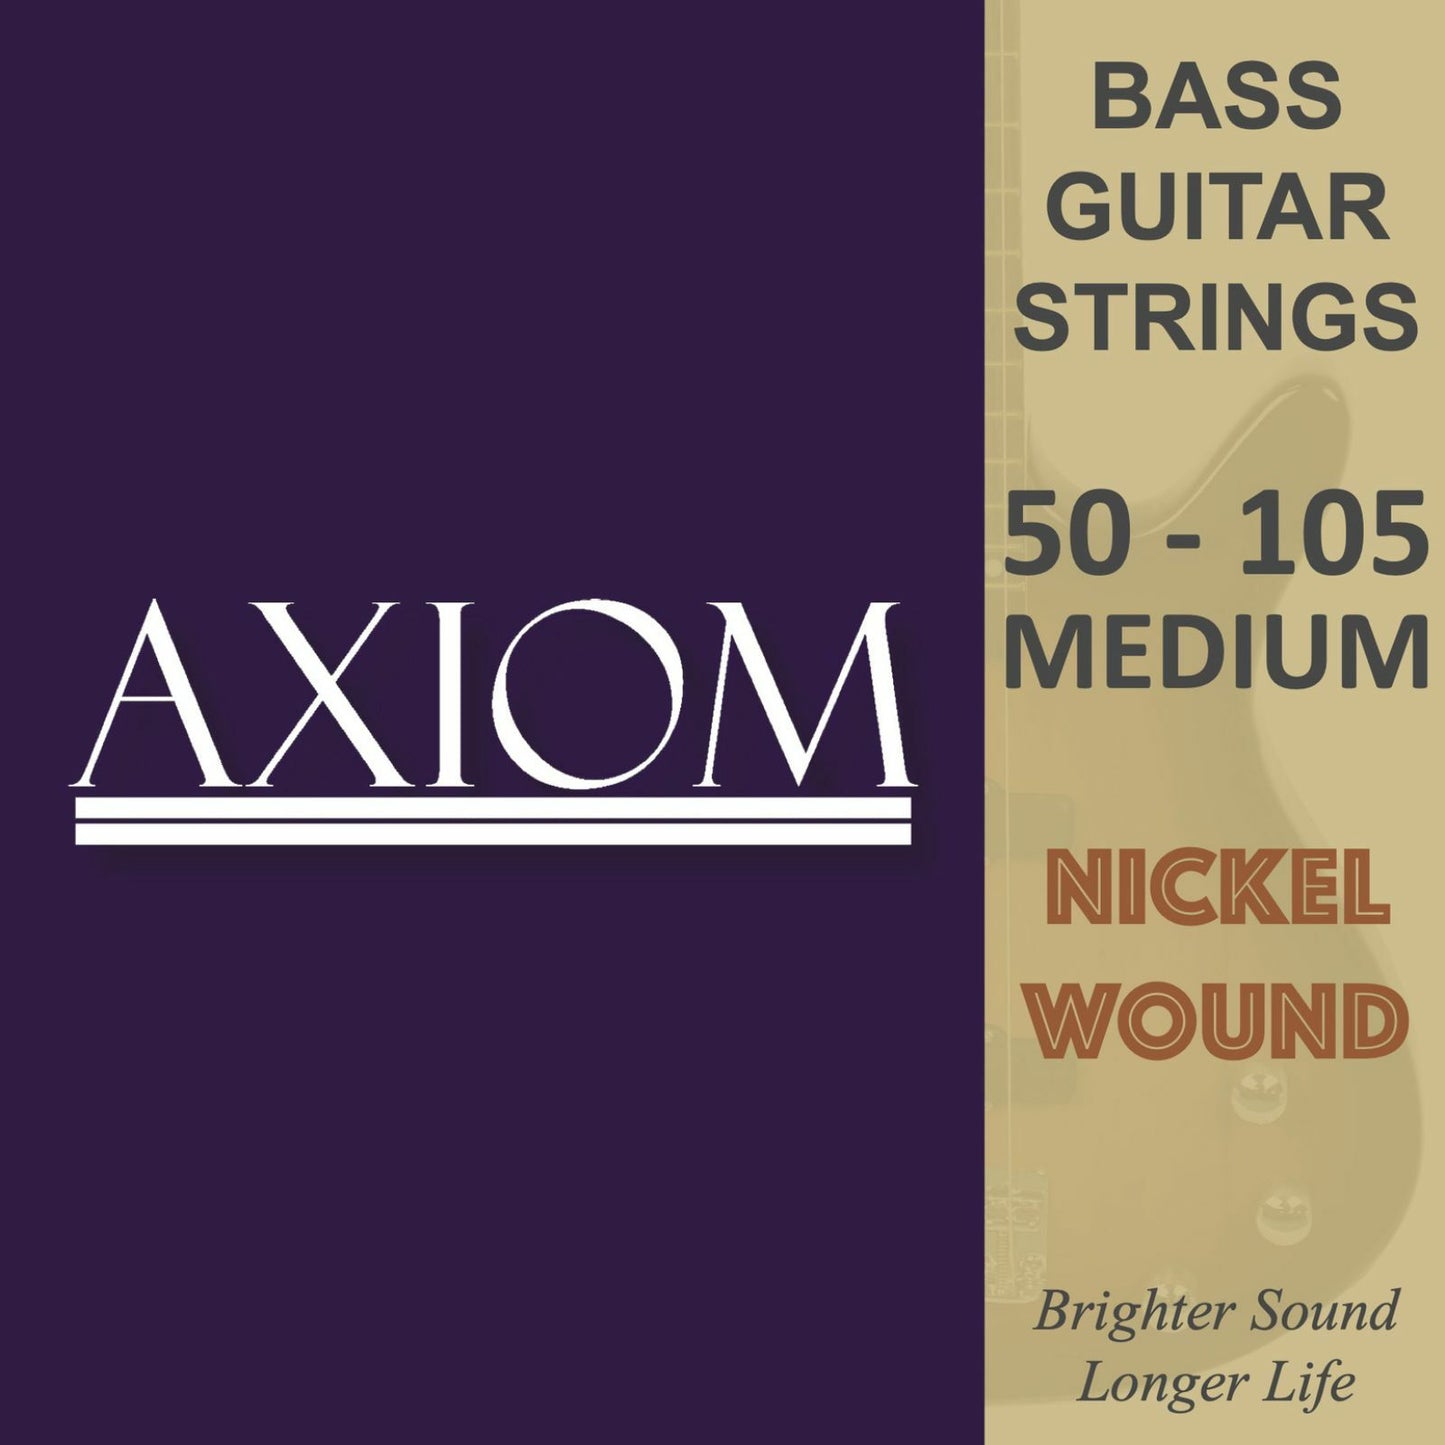 Axiom Bass Guitar Strings - Medium